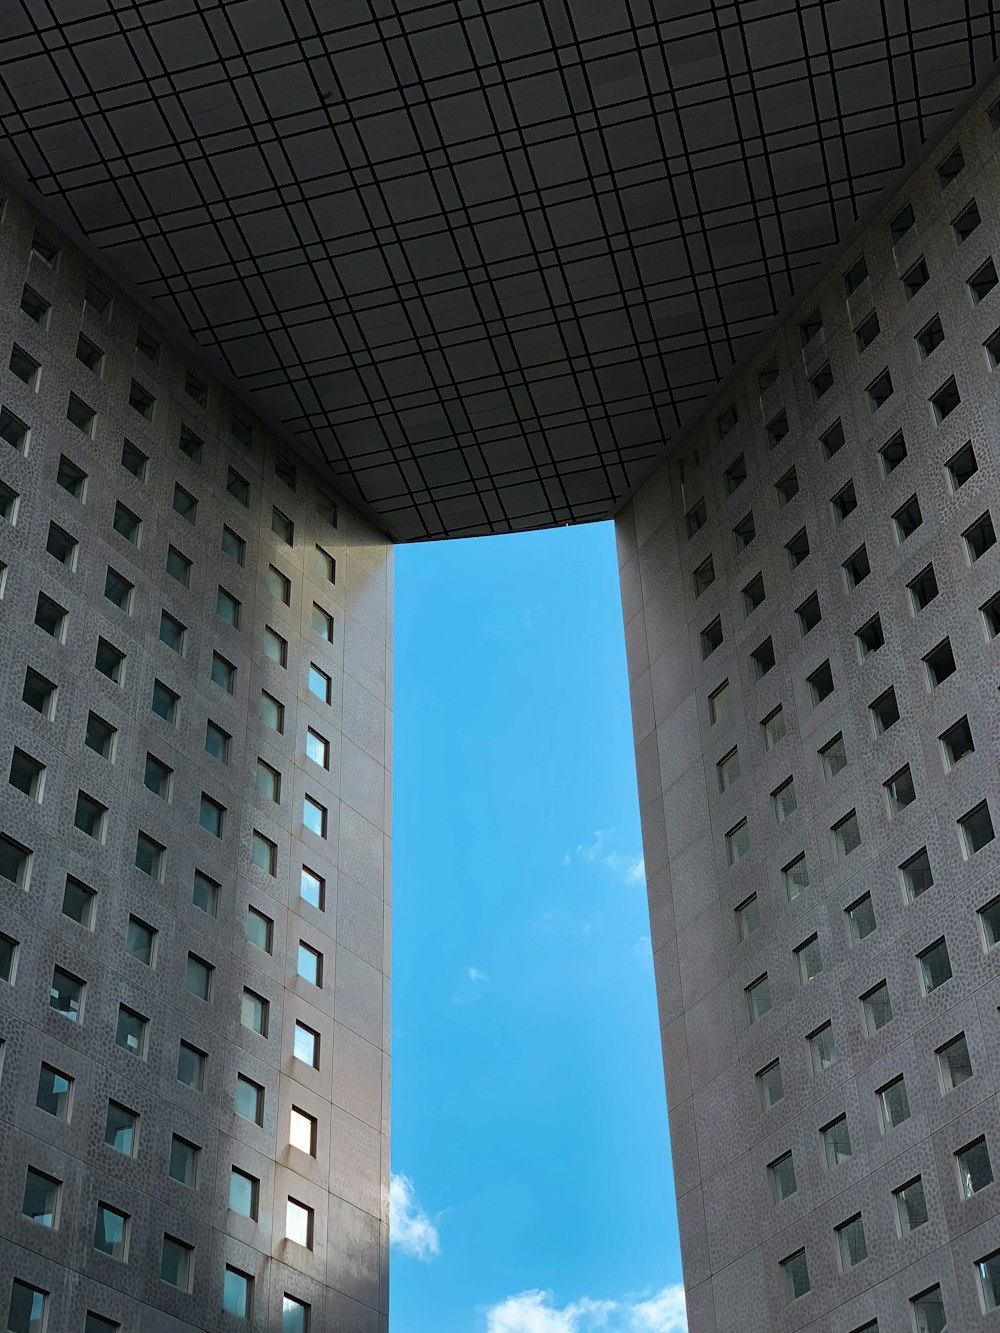 Photographie en contre-plongée d’un bâtiment en béton gris